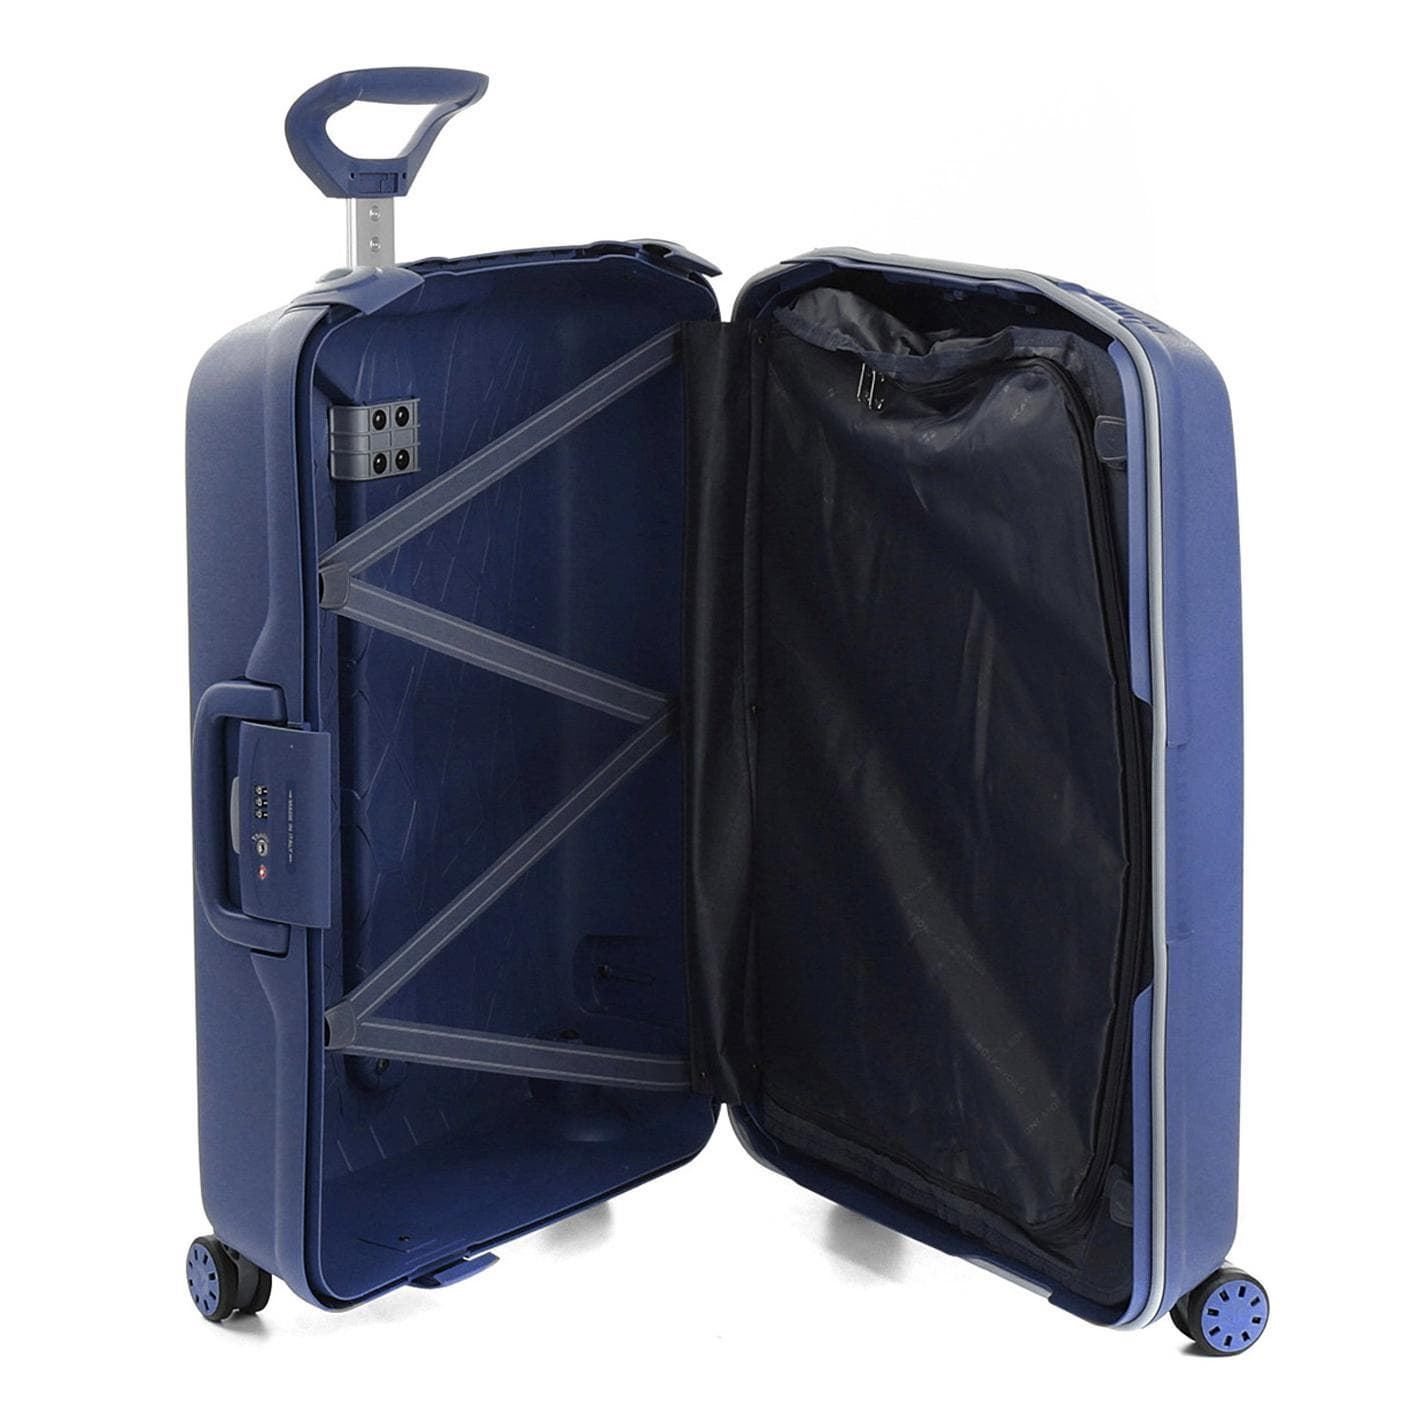 Típicamente Debería Bangladesh maleta grande roncato light spinner 4 ruedas azul marino